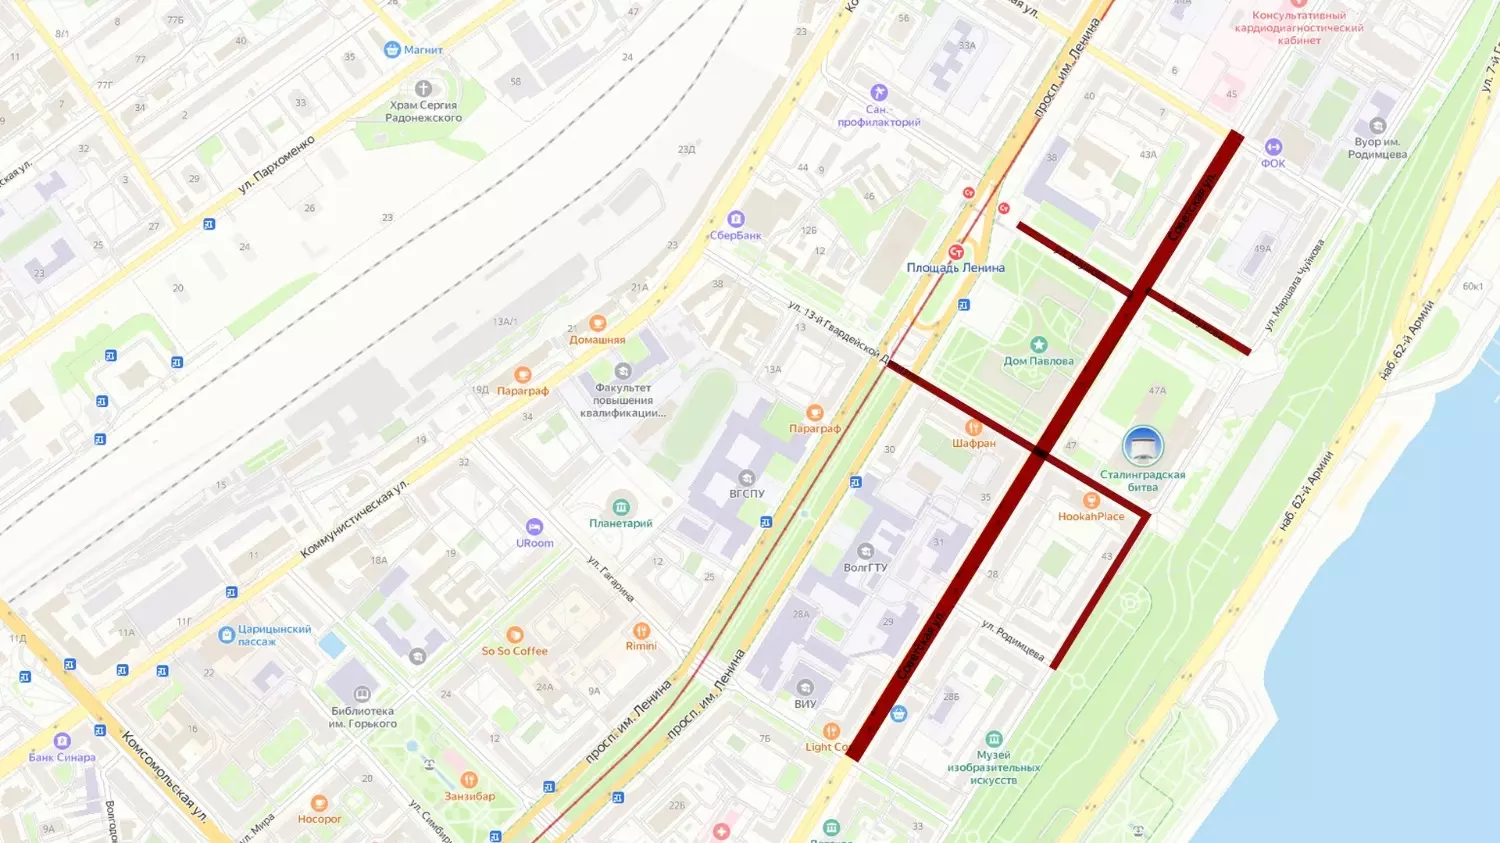 4 улицы станут пешеходными в Волгограде 2 февраля